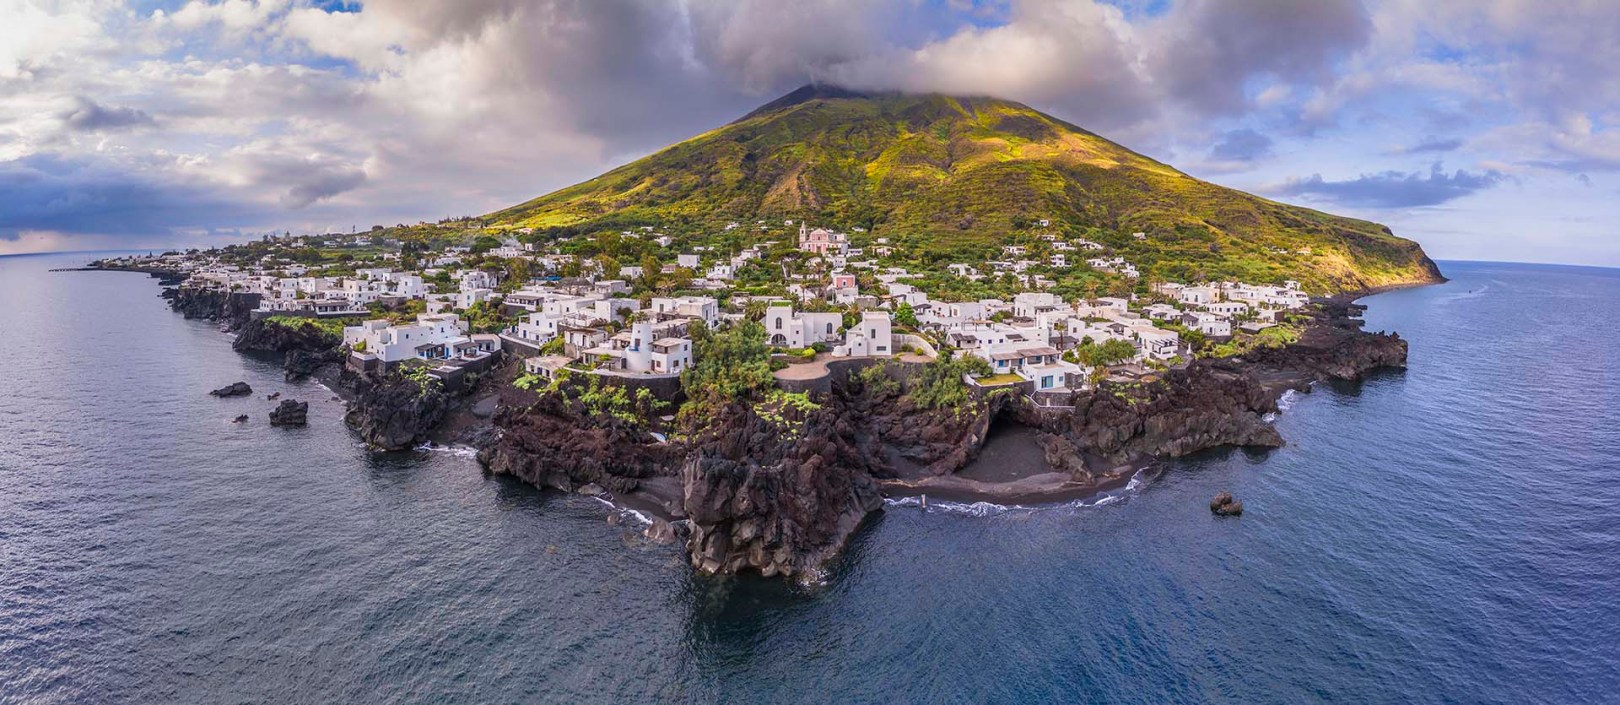 Isola di Stromboli, la costa di roccia lavica del borgo Piscità